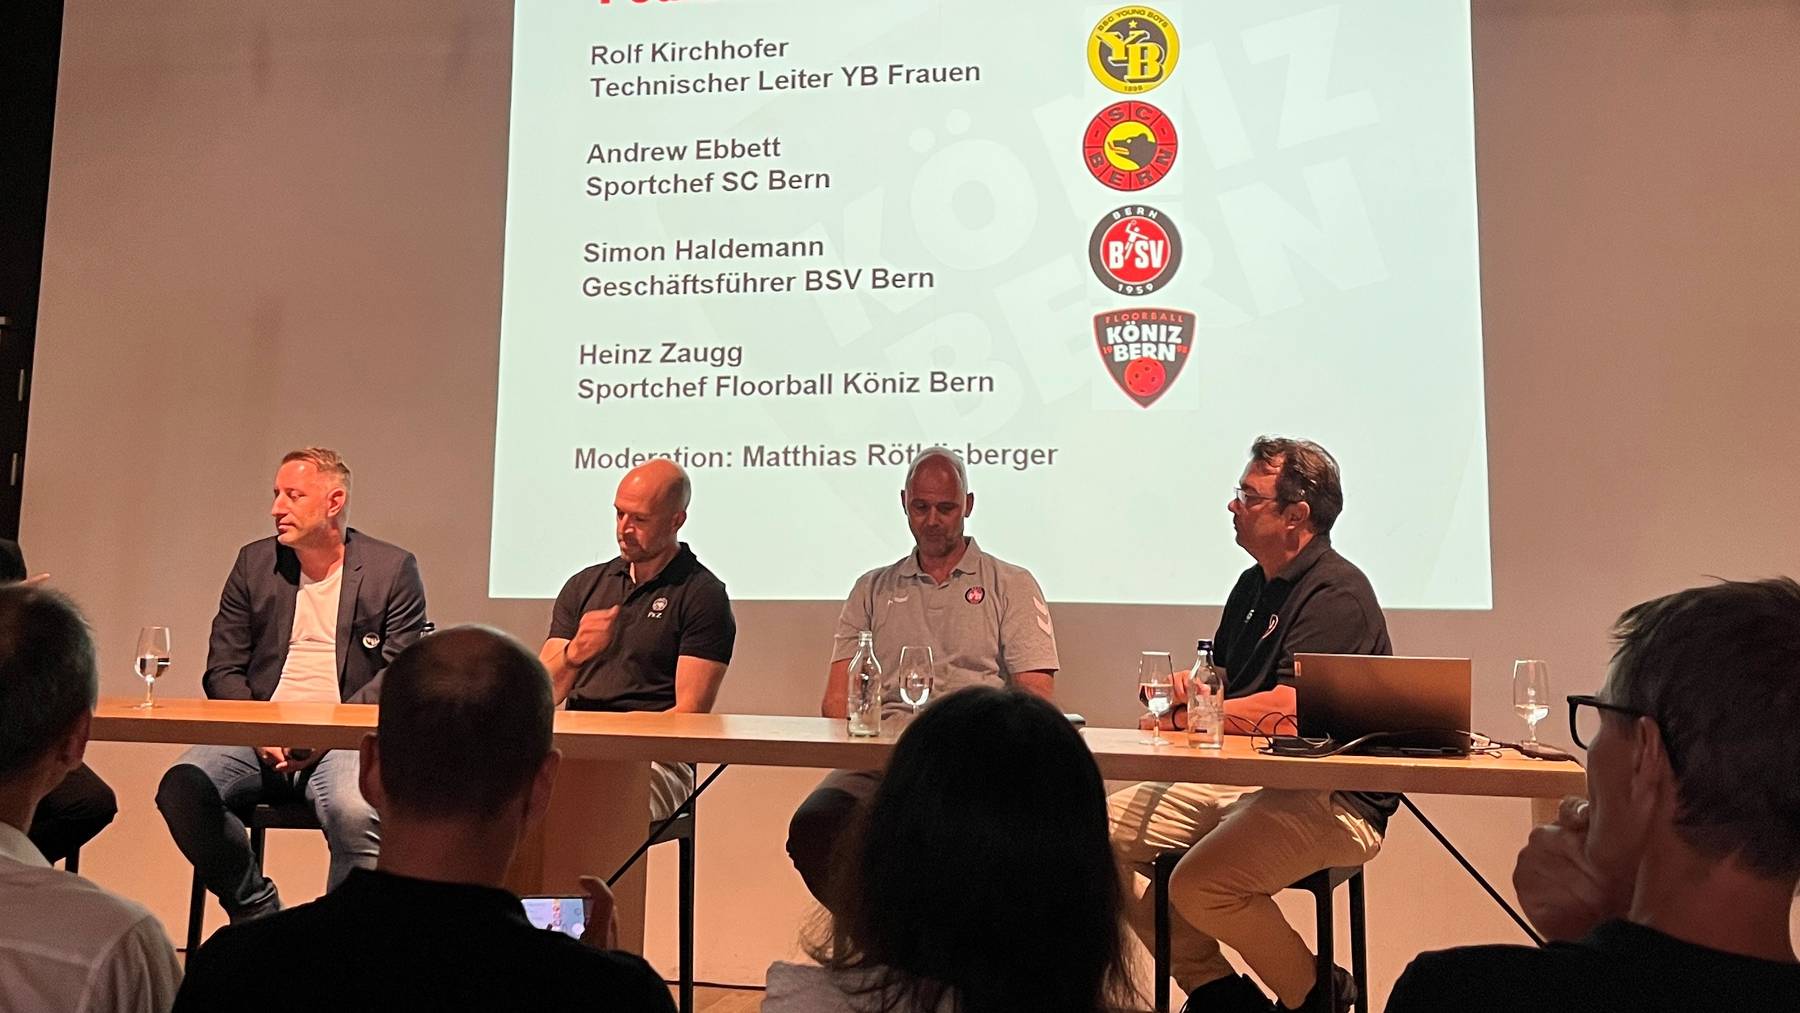 An einem Podium im Restaurant Allmend tauschen sich vier Berner Sportvertreter aus. V.l.n.r.: Rolf Kirchhofer (YB), Andrew Ebbett (SCB), Simon Haldemann (BSV Bern), Heinz Zaugg (Floorball Köniz Bern).